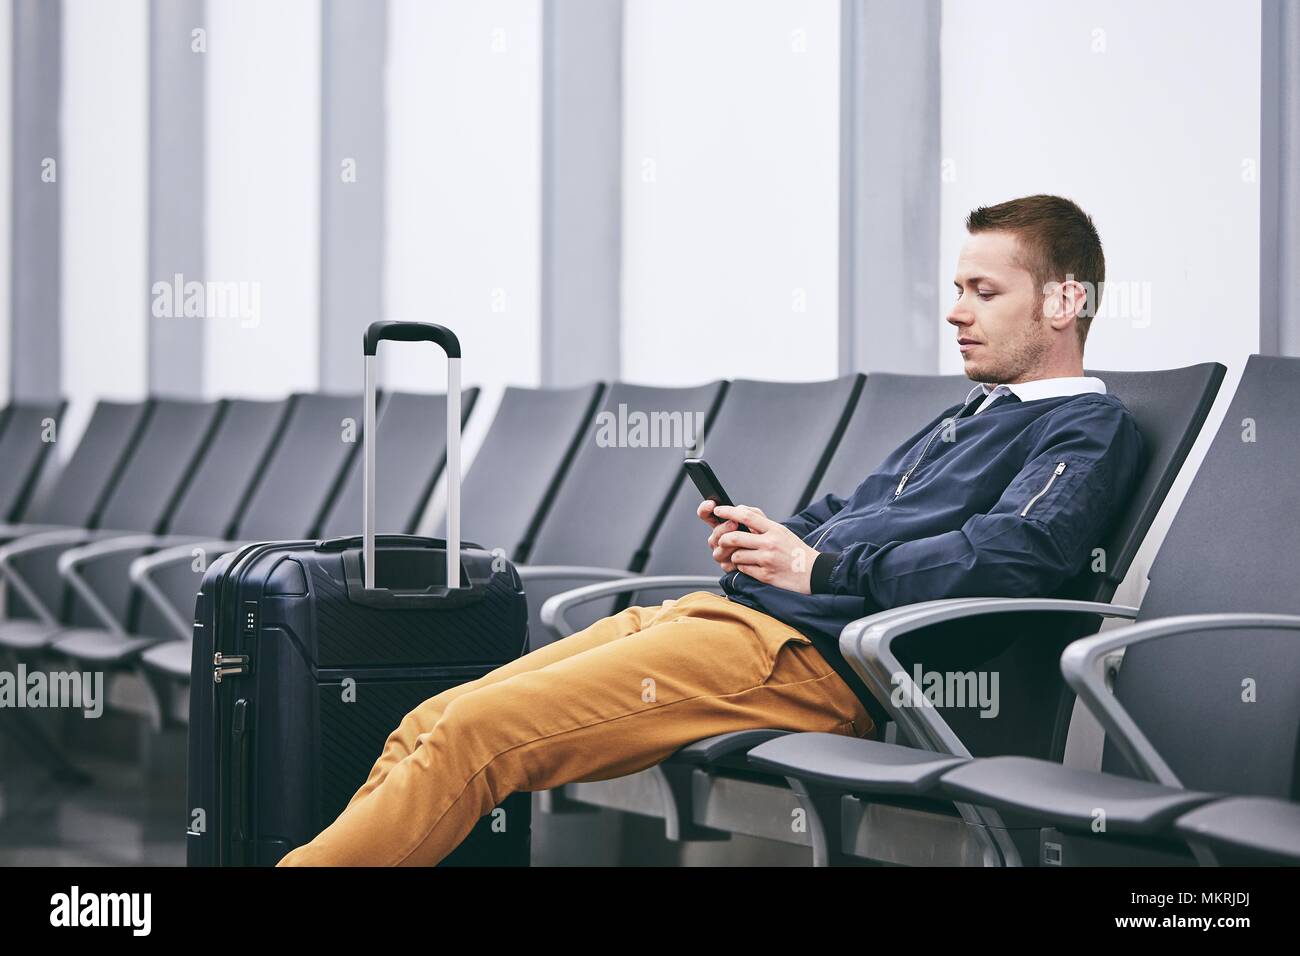 Mann mit dem Flugzeug reisen. Junge Passagier mit Telefon im Flughafen Terminal warten. Stockfoto